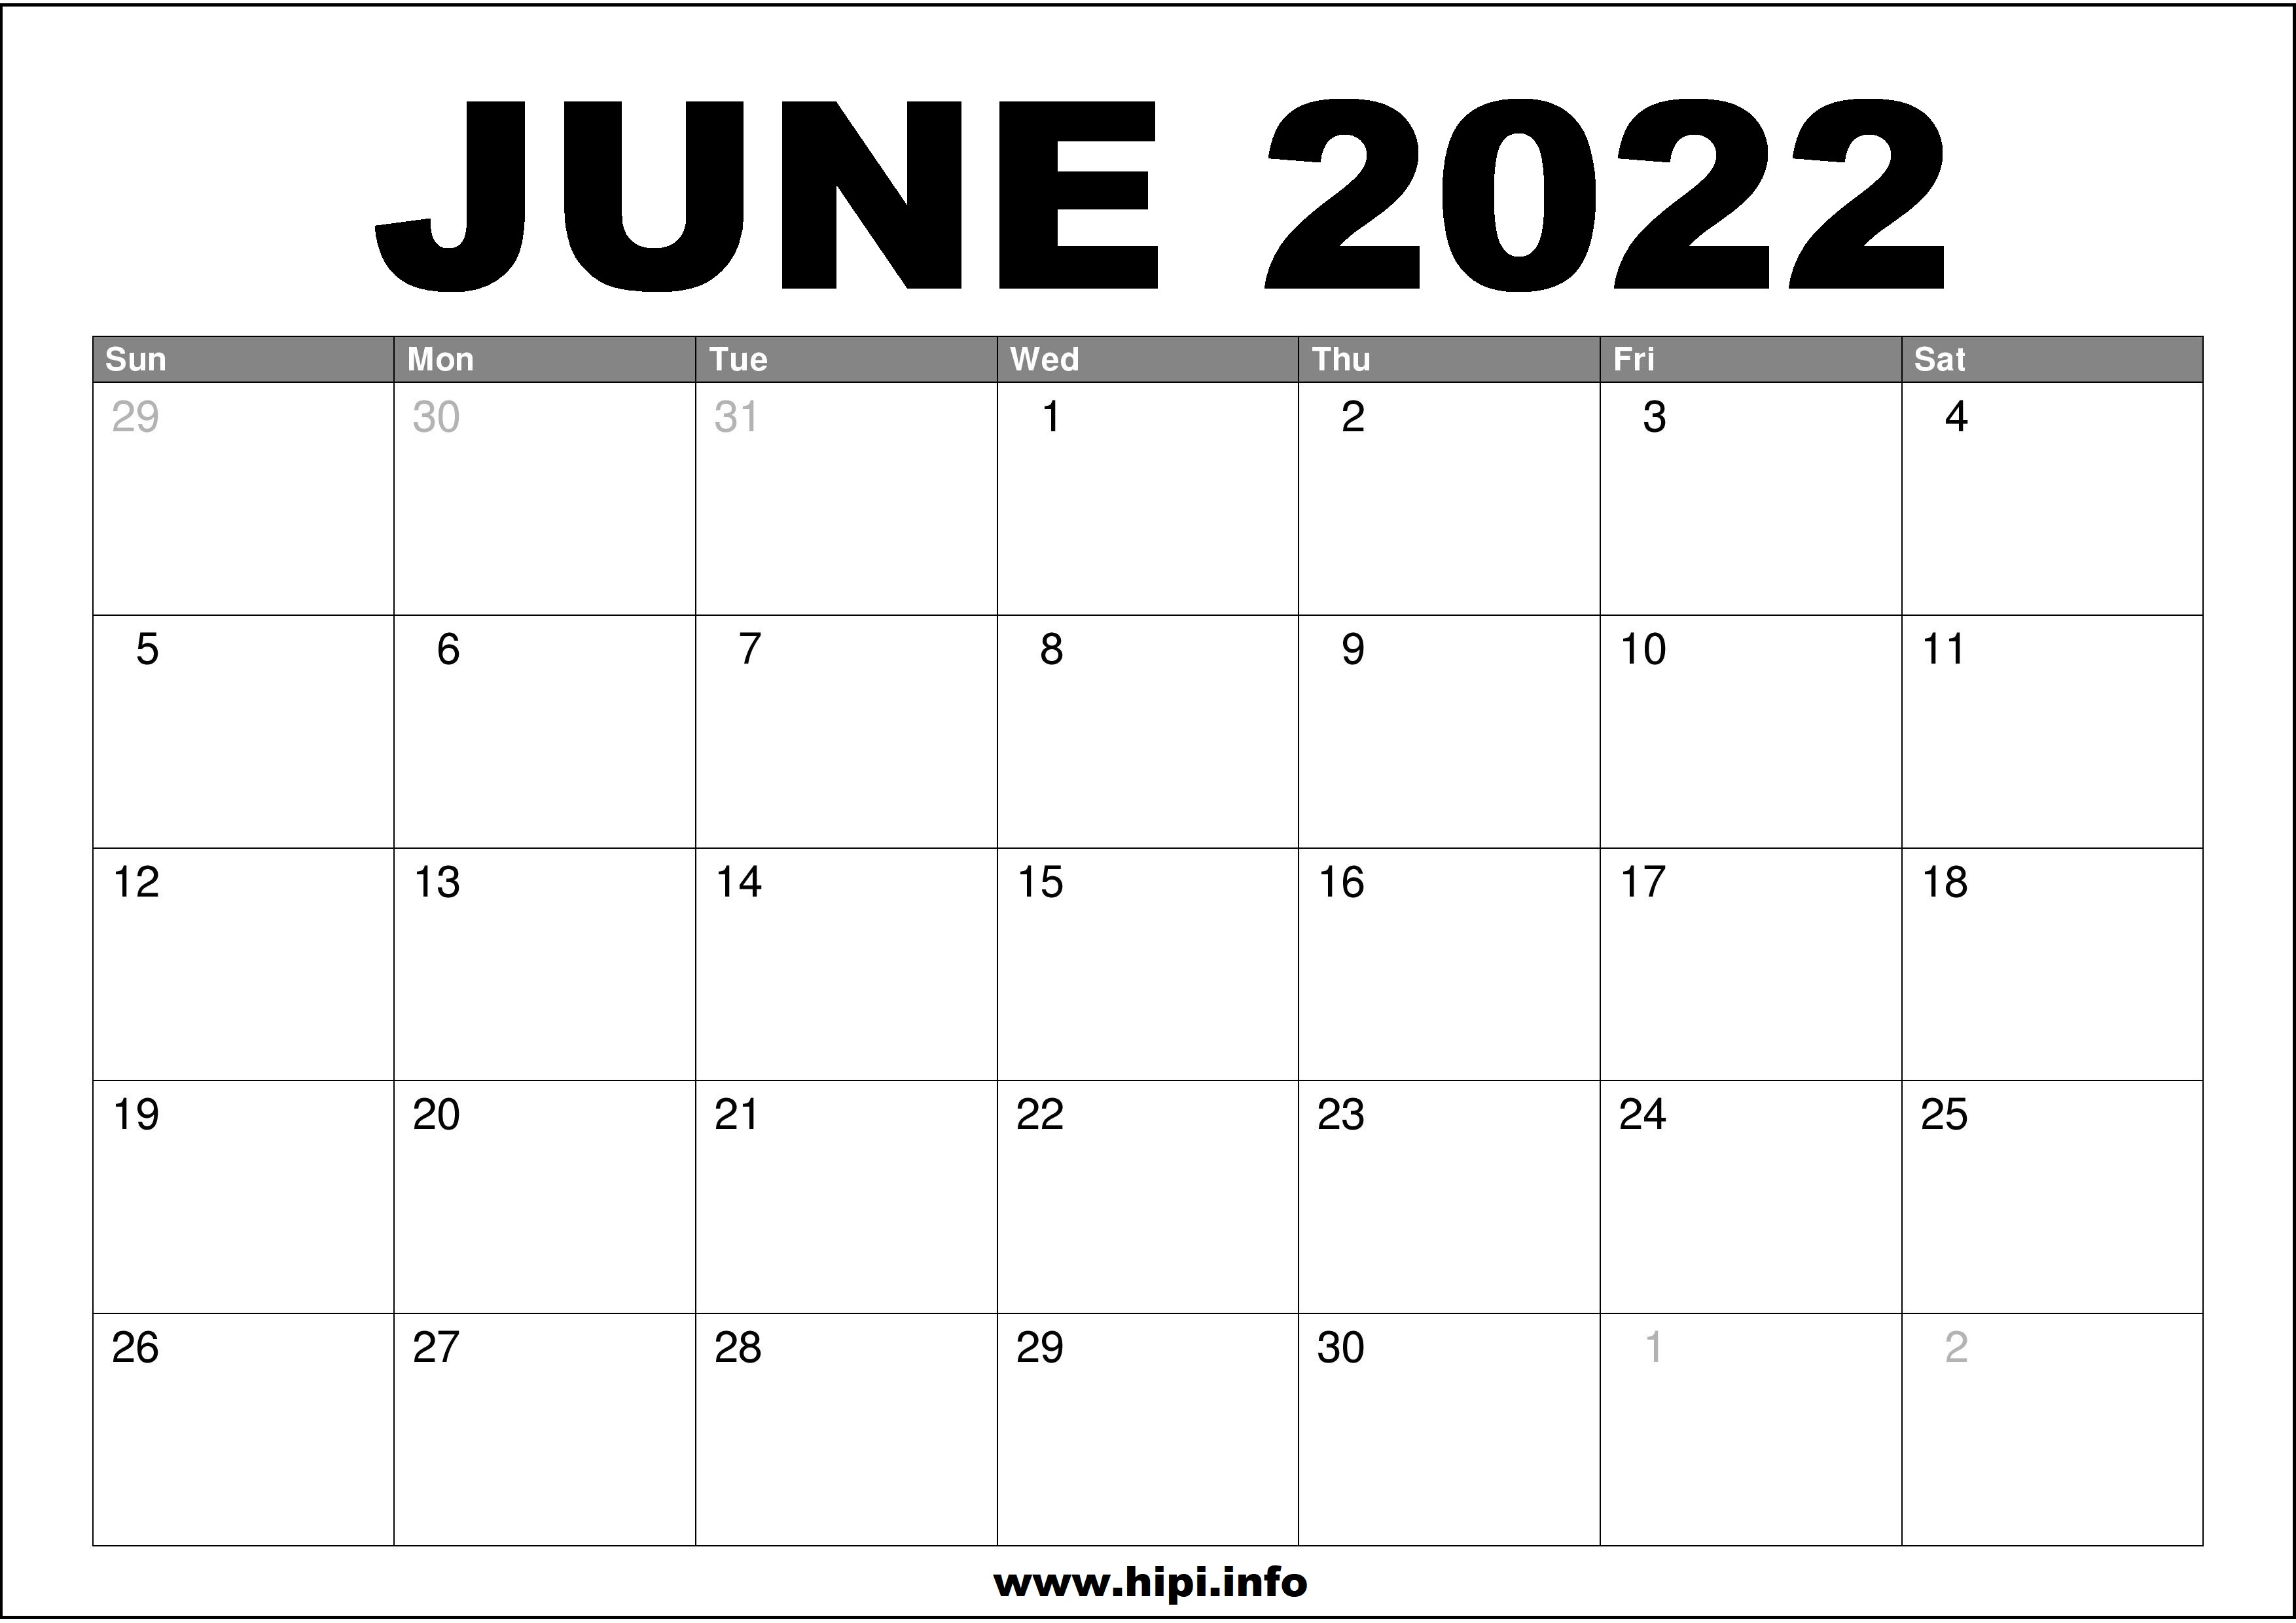 Free Printable June Calendar 2022 June 2022 Calendar Printable Free - Hipi.info | Calendars Printable Free